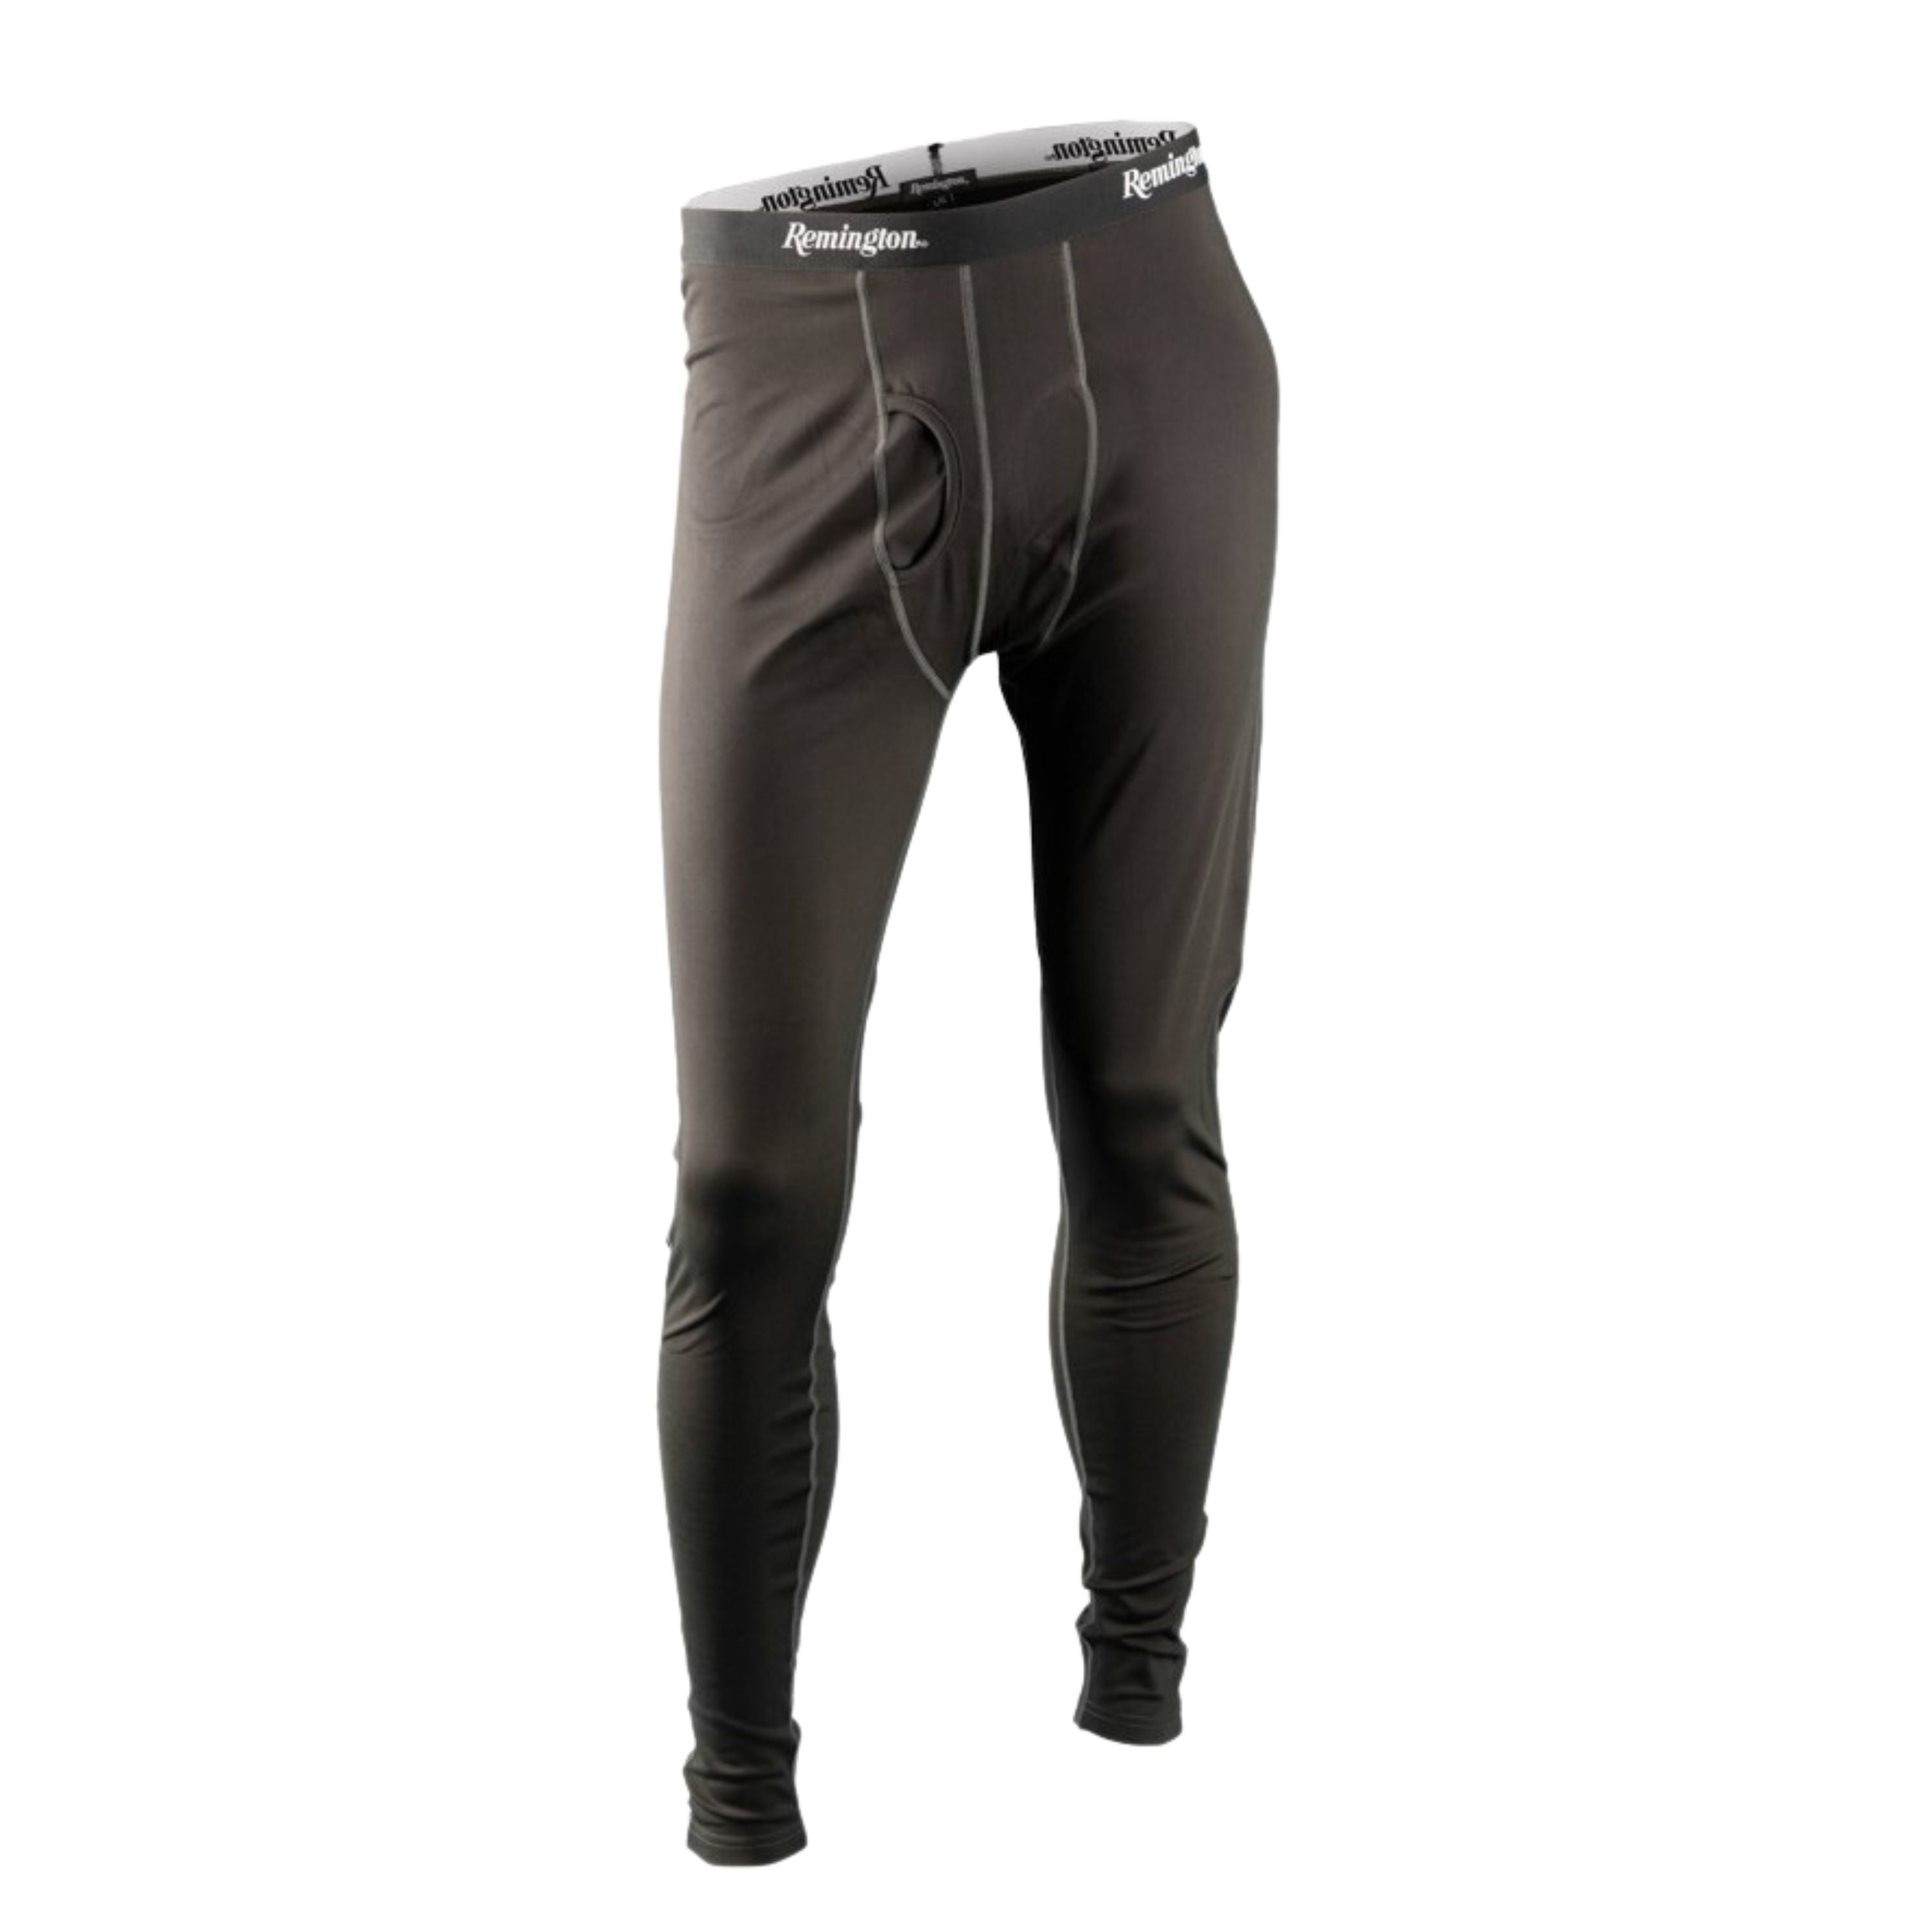 Men's Base Layer Pants, Thermal Leggings